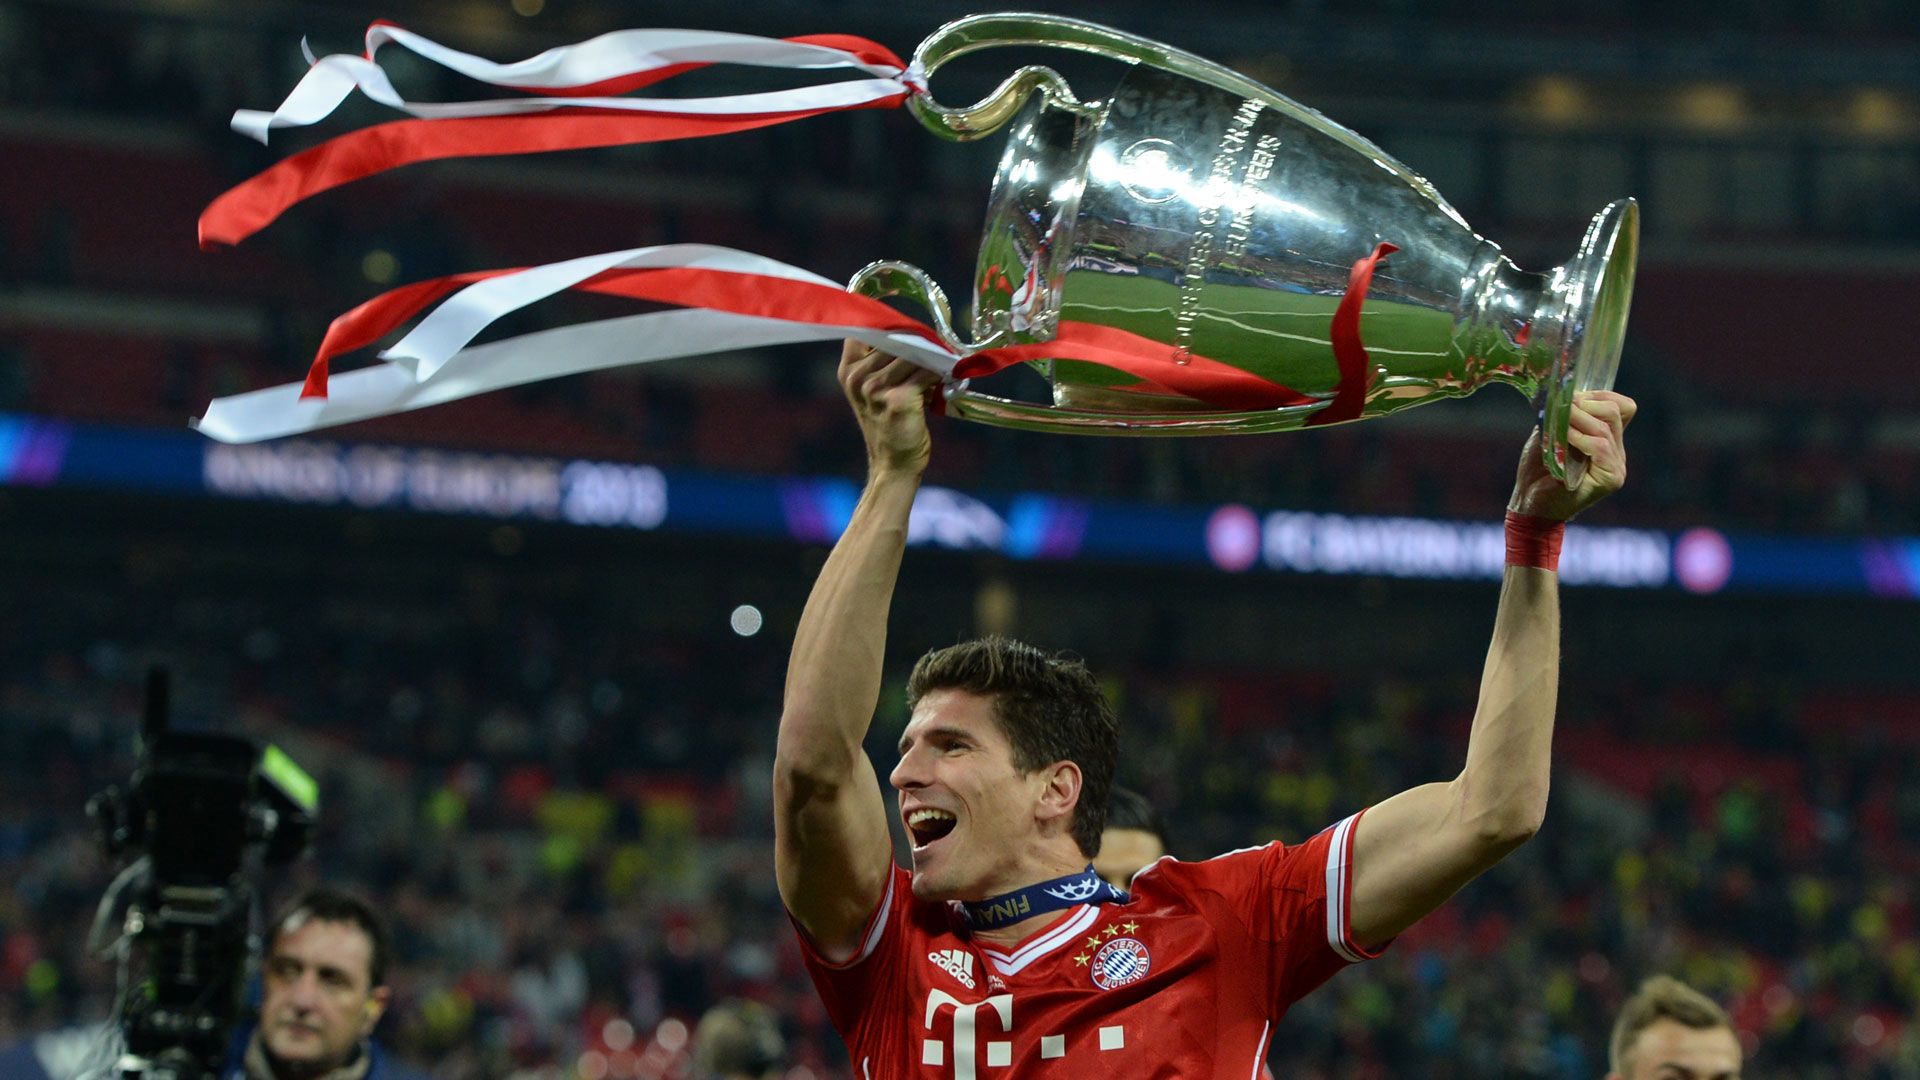 "Er hat das ganze Spiel revolutioniert": Mario Gomez hebt Star des FC Bayern München auf eine Stufe mit Lionel Messi